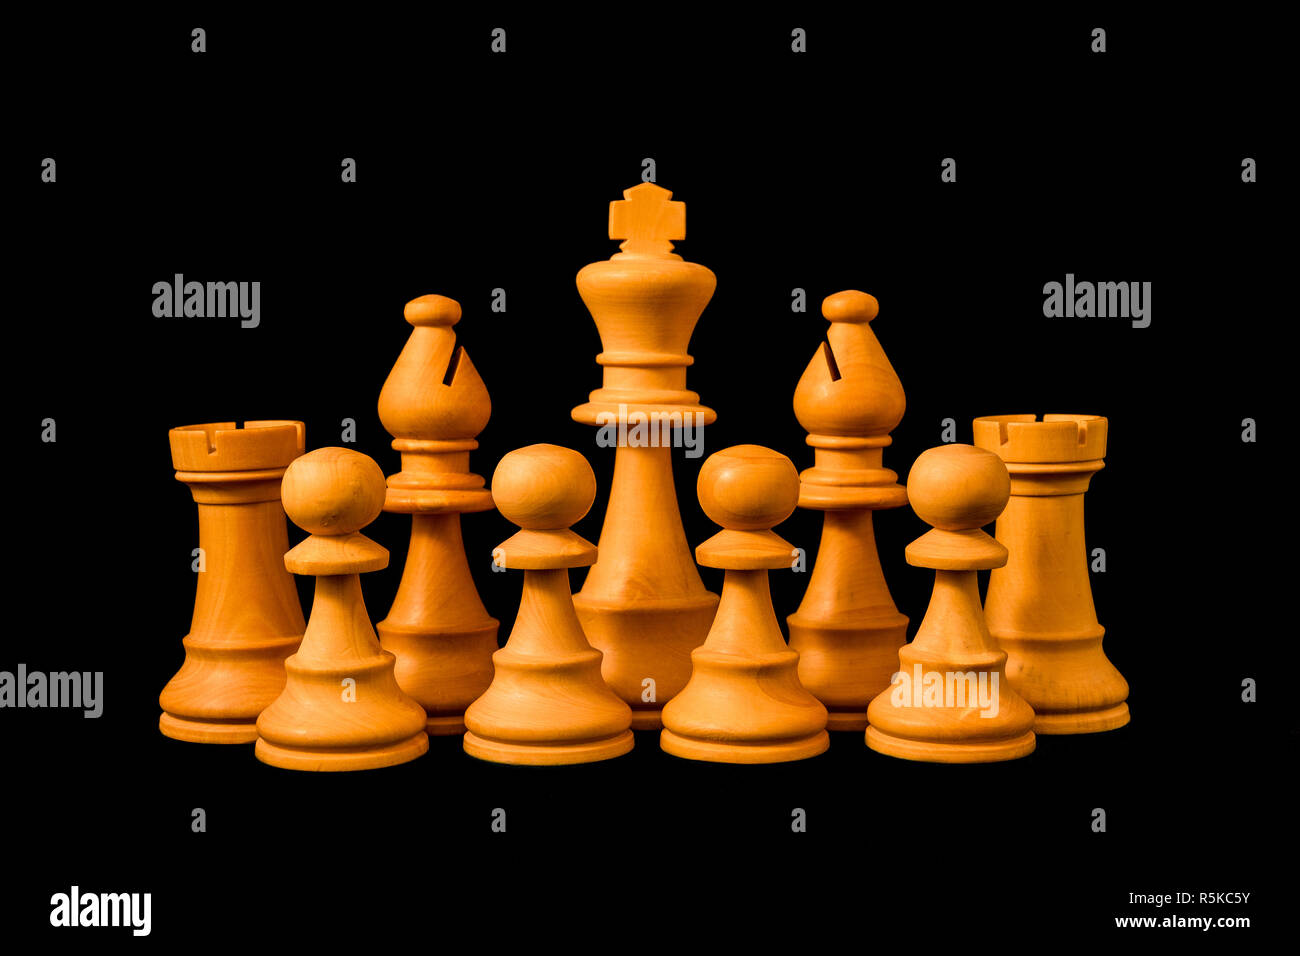 Weiße König von Bauern, Saatkrähe und Bischöfe mit Sinn für den Schutz und die Verteidigung geschützt, Standard Schach Holzstück auf schwarzem Hintergrund Stockfoto